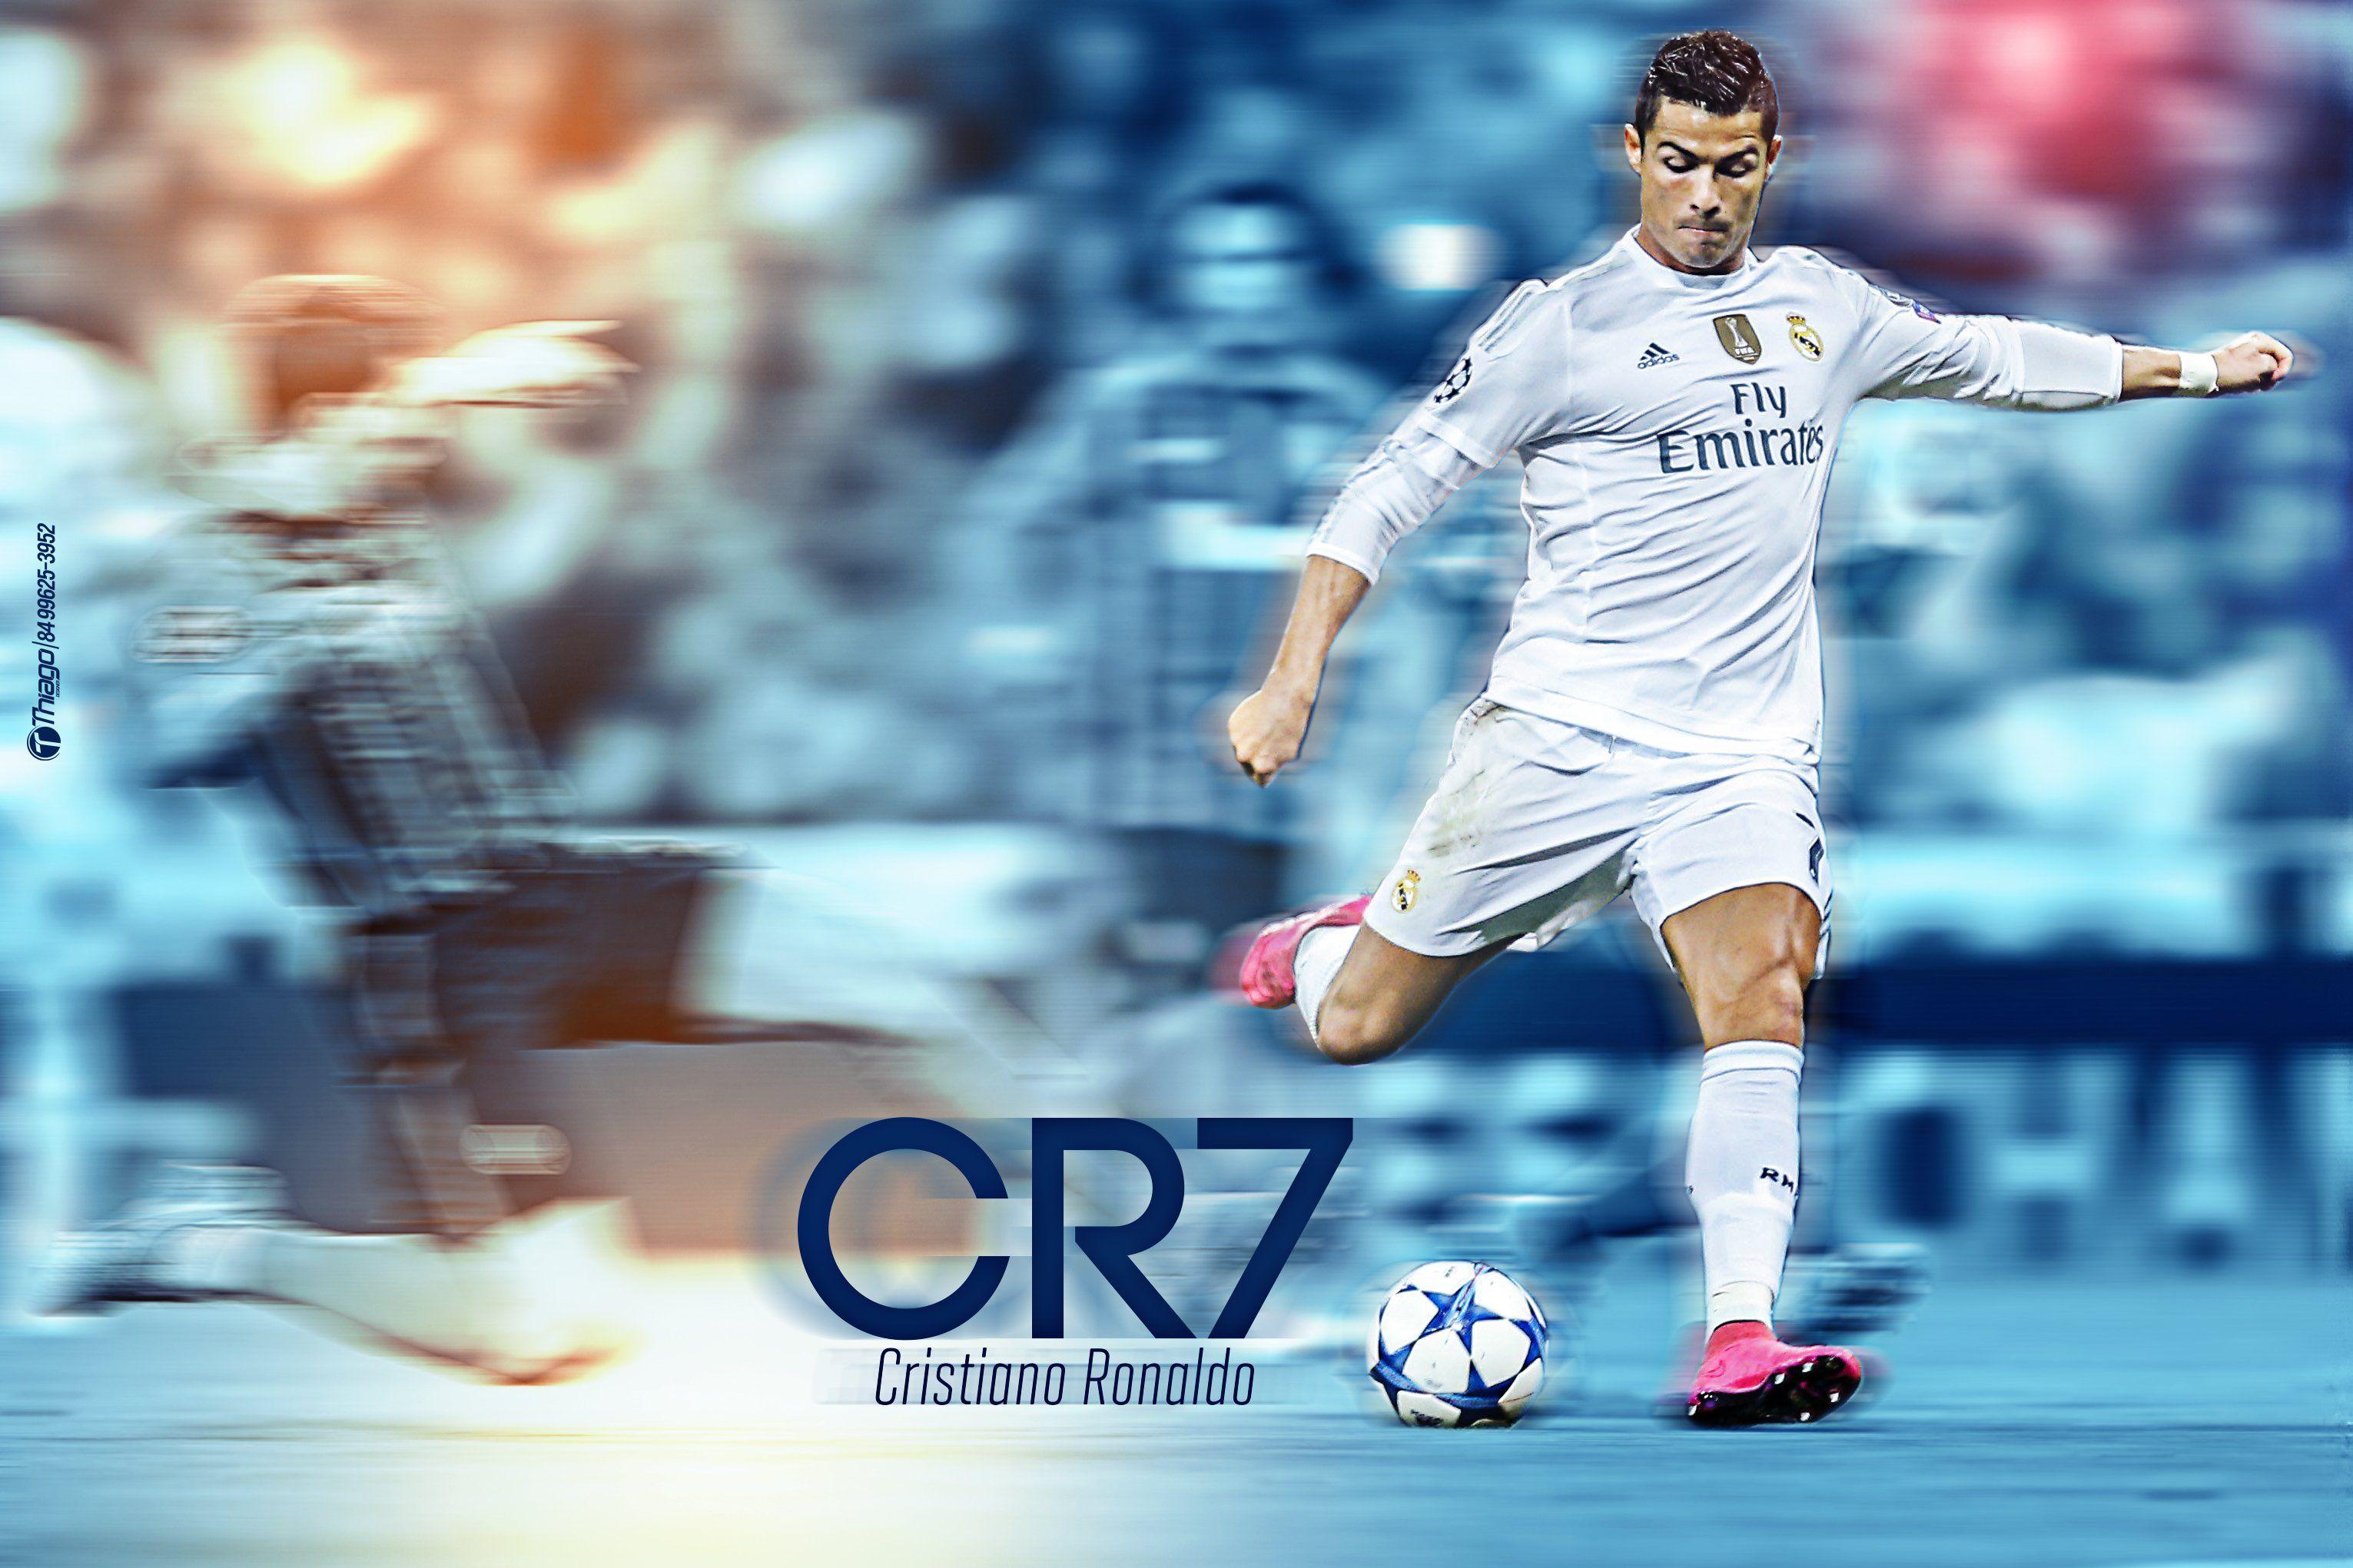 Cristiano Ronaldo Wallpaper High Quality Resolution Desktop